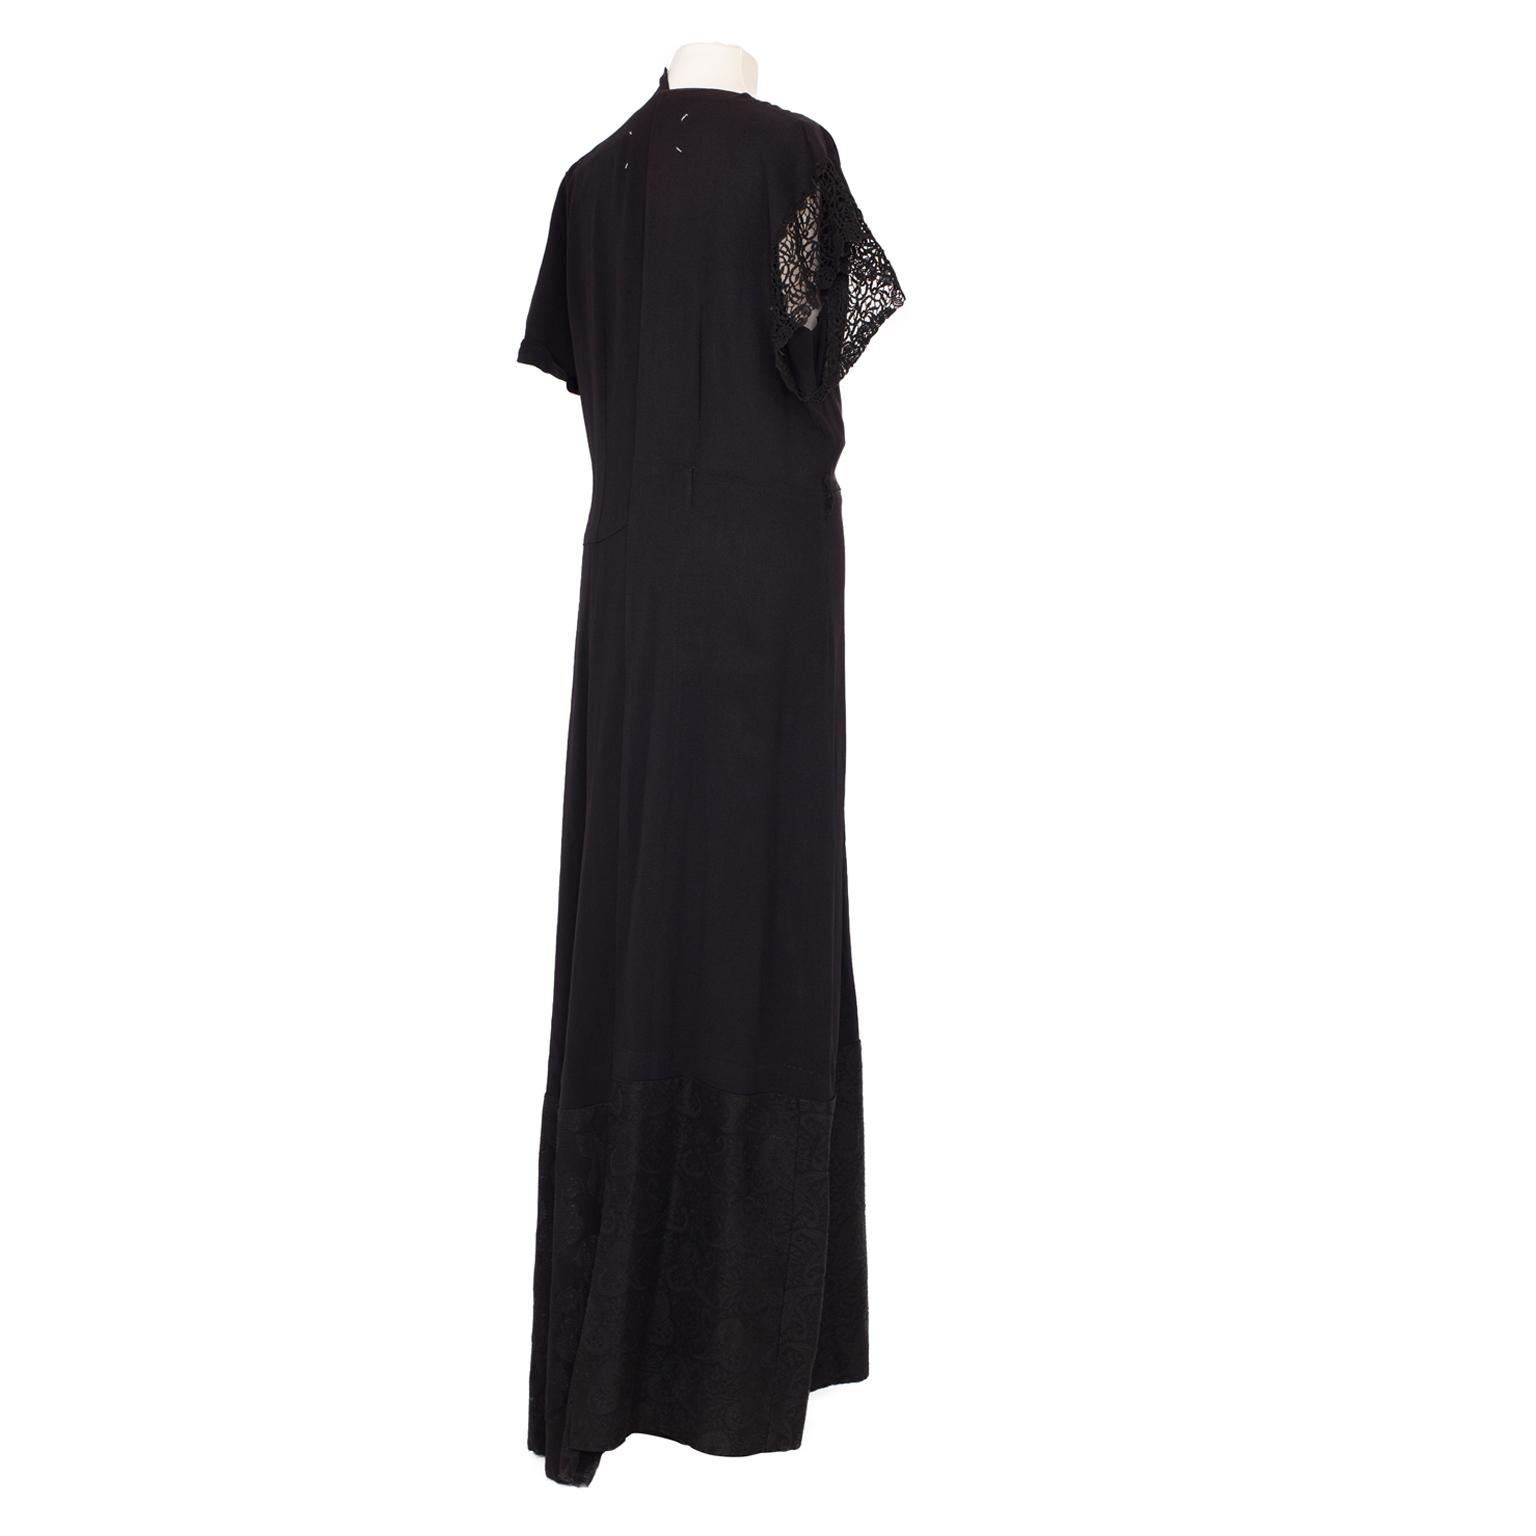 Women's Martin Margiela Artisanal Deconstructed Black Dress, 1993 / SS 1994